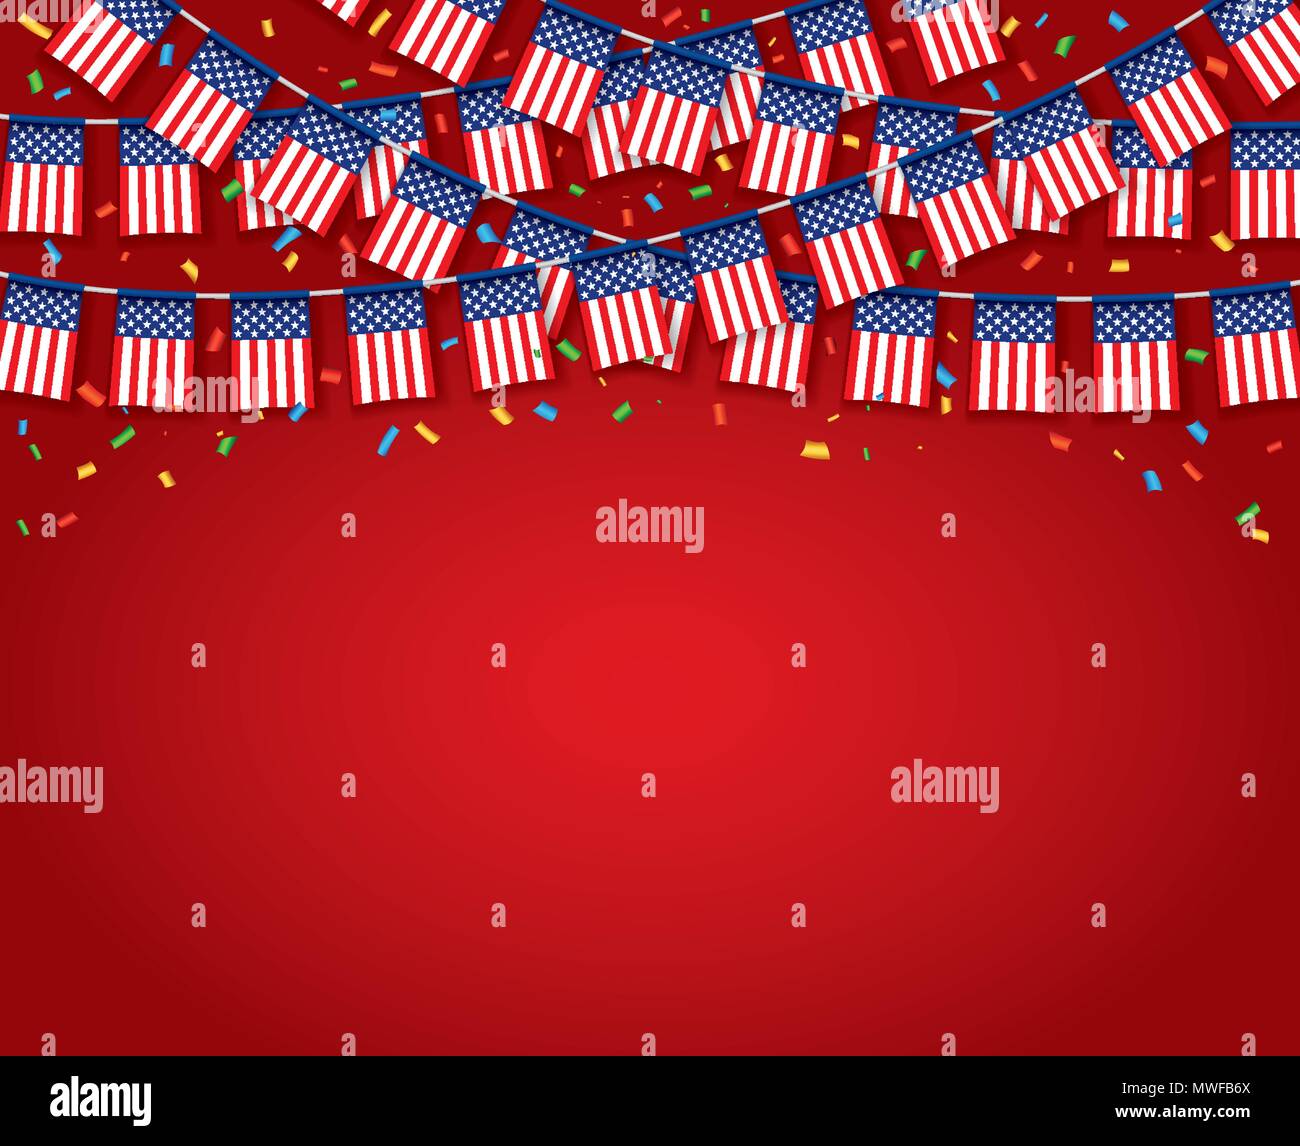 Girlande USA Flags, die mit einem roten Hintergrund, Vorlage Banner, hängende Bunting Flags für den 4. Juli Nationalfeiertag feiern, Vector Illustration Stock Vektor